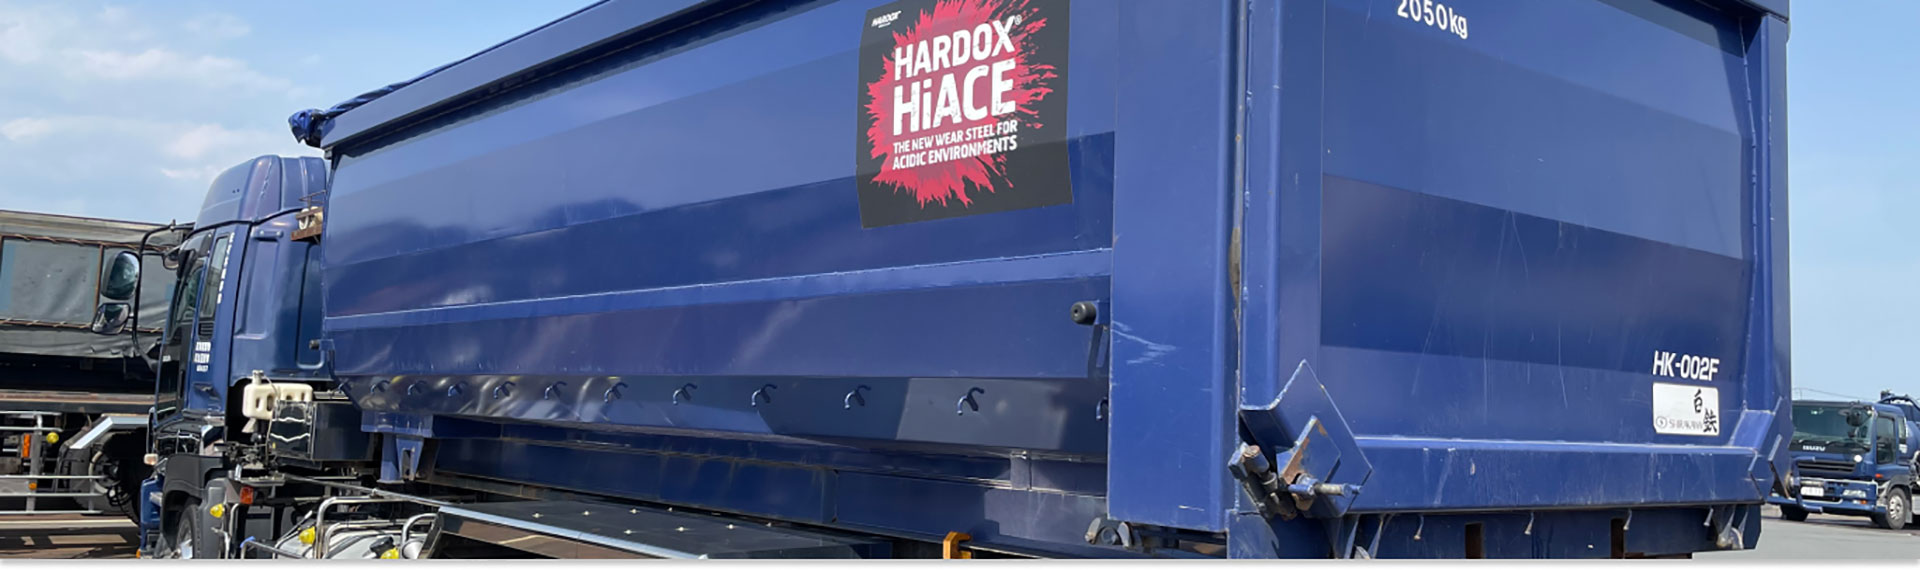 부식성 환경 용도로 Hardox® Hi Ace 강재를 사용해 제작한 짙은 청색의 트럭 적재함